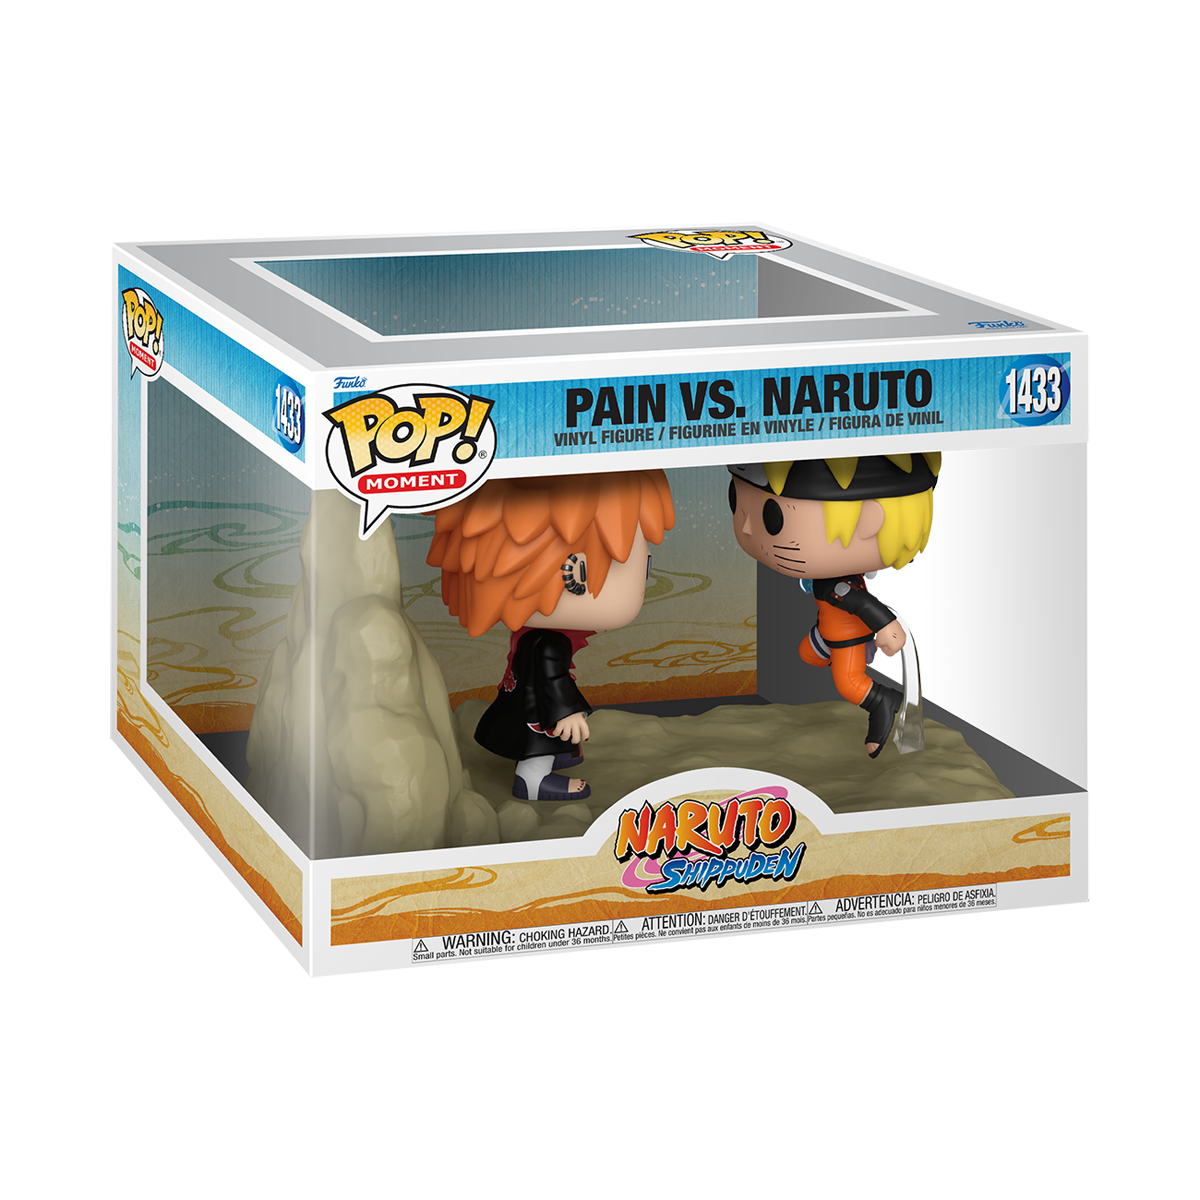 Naruto - Pain vs. Naruto (Pop! Moment) Vinyl Figur 1433 - Funko Pop! Figur - multicolor